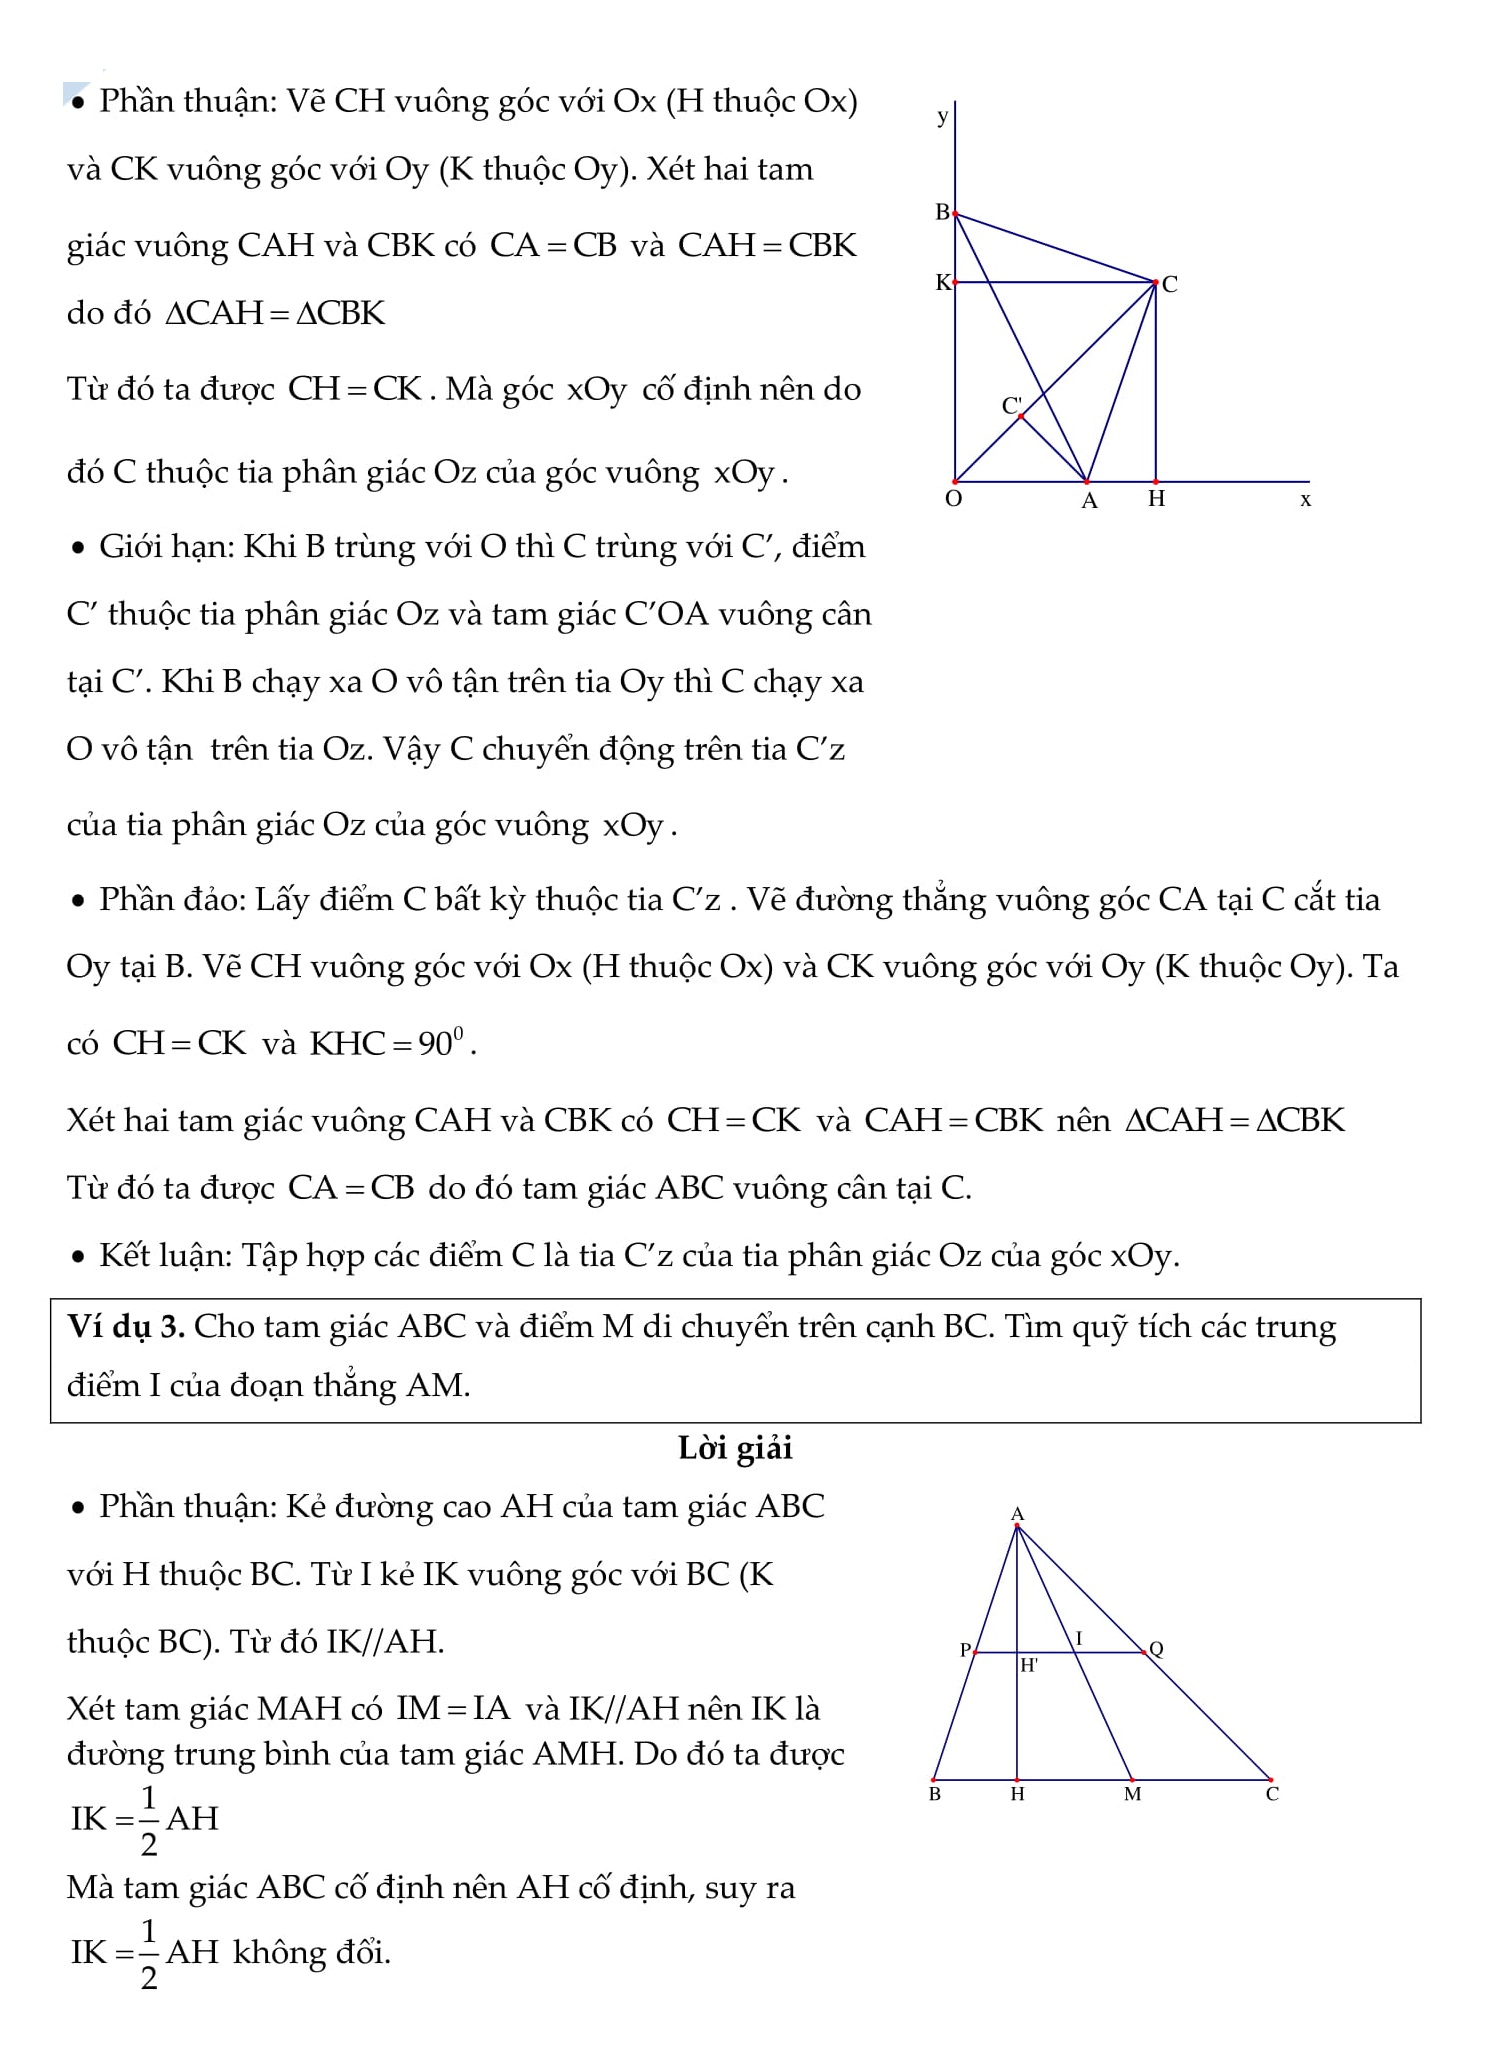 Các bài tập về quỹ tích và tập hợp điểm - Chuyên đề toán 9